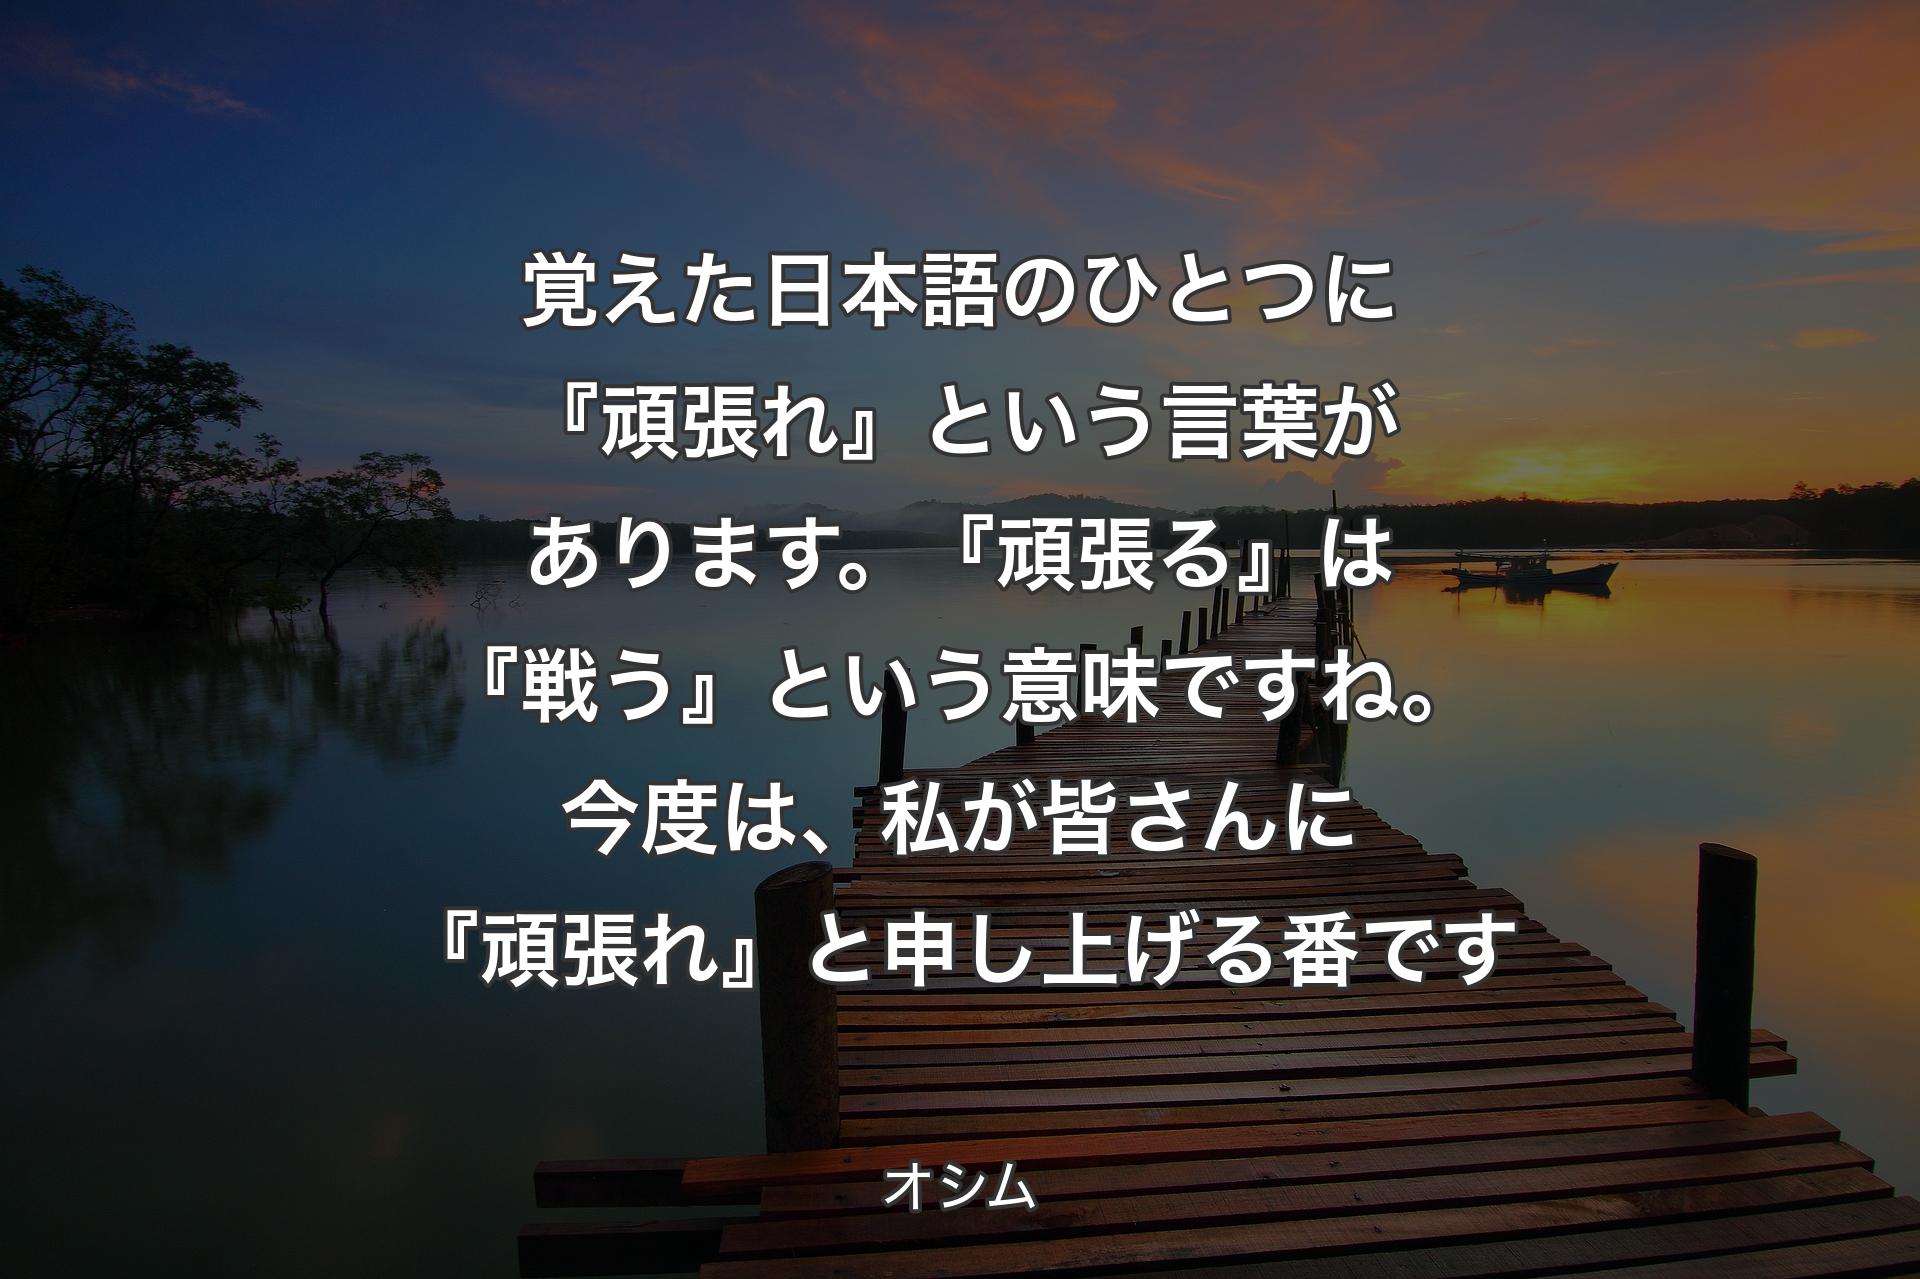 【背景3】覚えた日本語のひとつに『頑張れ』という言葉があります。『頑張る』は『戦う』という意味ですね。今度は、私が皆さんに『頑張れ』と申し上げる番です - オシム